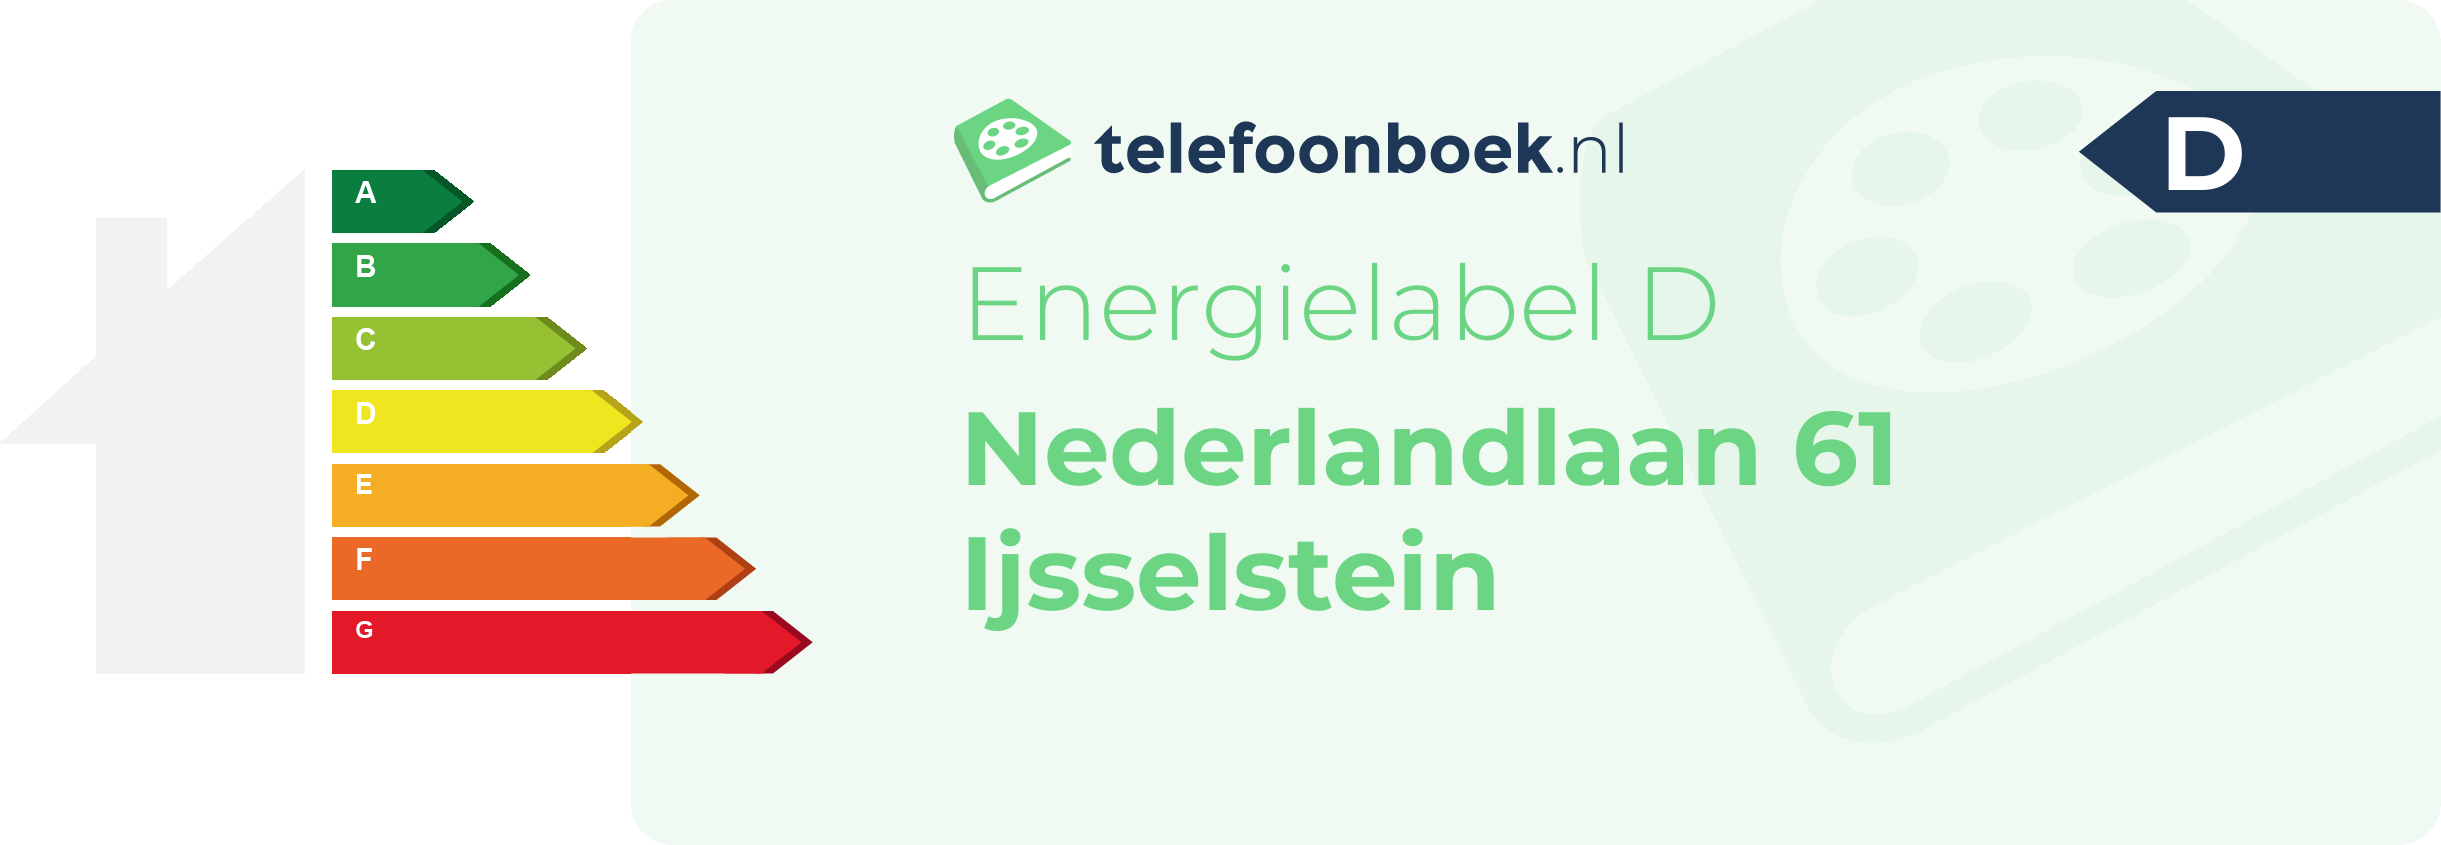 Energielabel Nederlandlaan 61 Ijsselstein